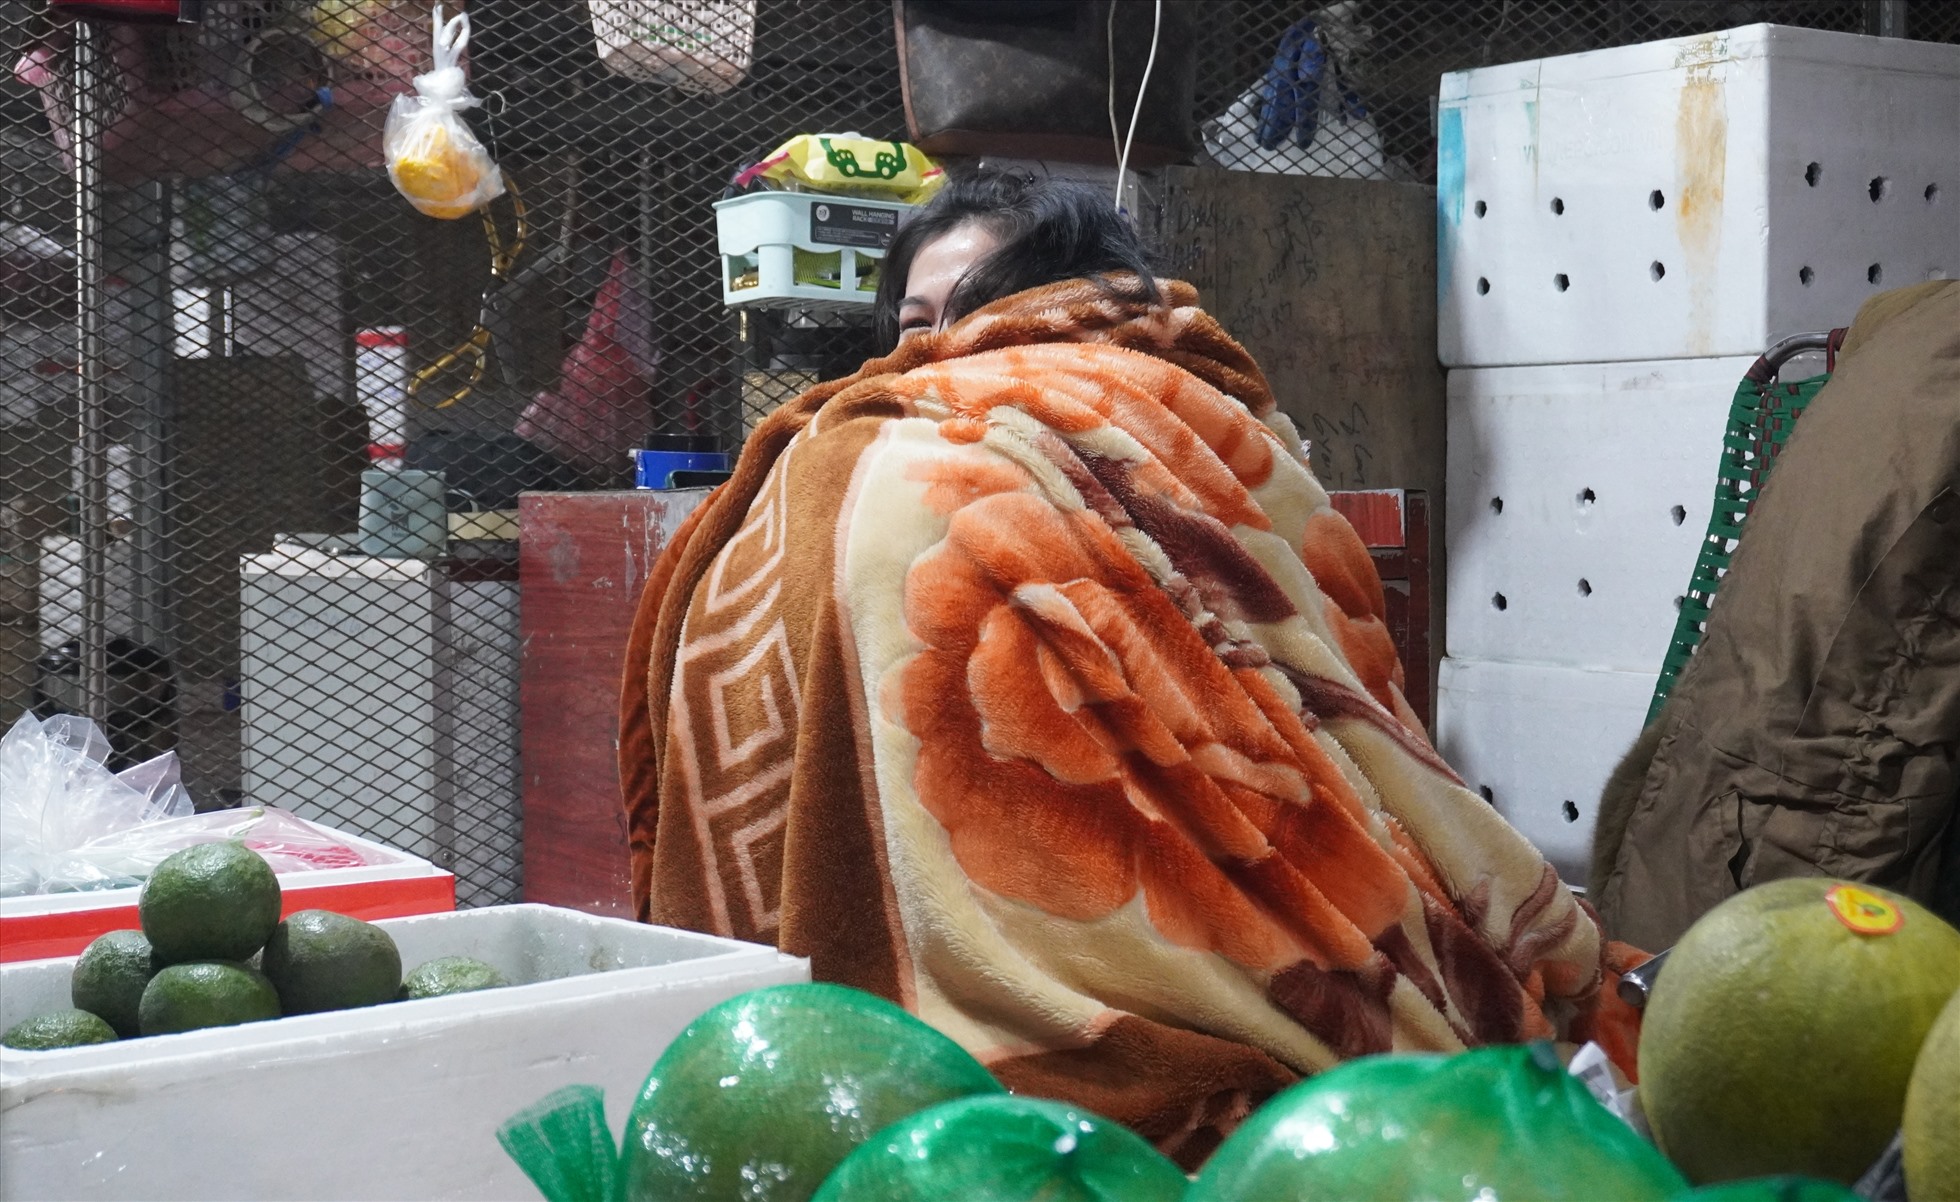 Các tiểu thương buôn bán tại chợ đầu mối Đông Hương co ro trong giá rét, dùng chăn quấn quanh người, ngồi chờ khách đến mua hàng. Ảnh: Quách Du